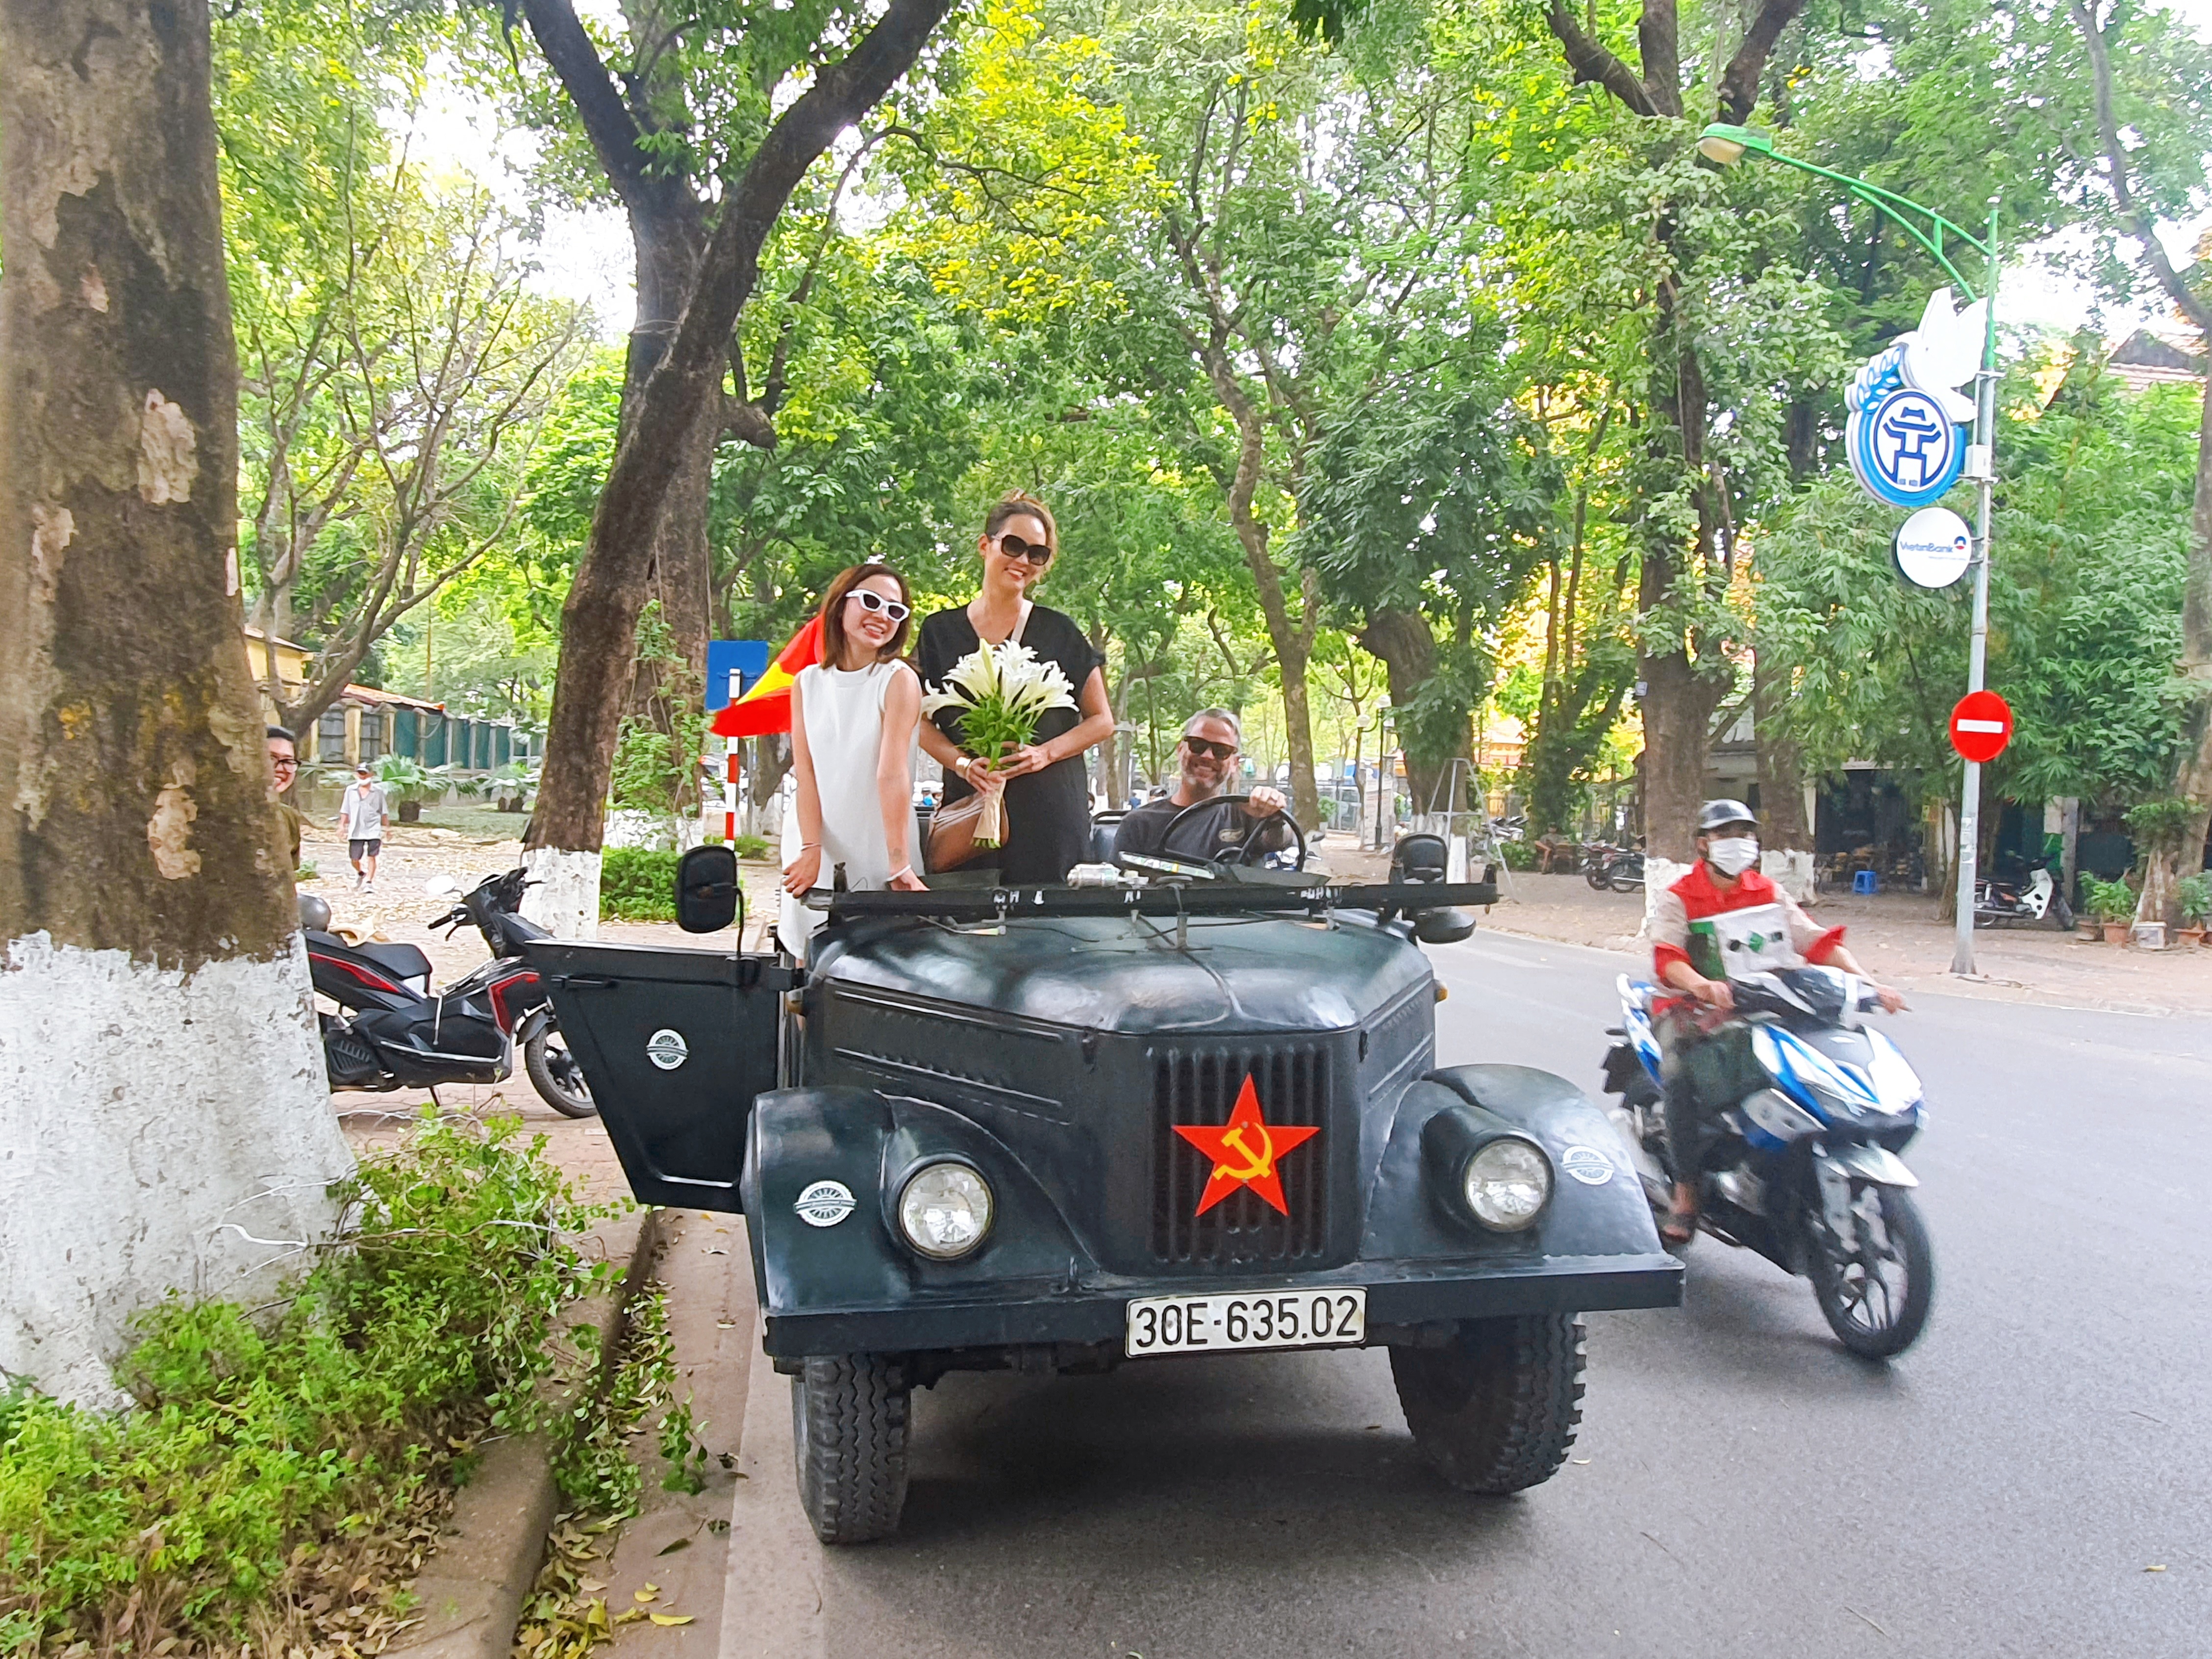 Hanoi Backstreet Tours, Hanoi motorbike tour, Hanoi motorbike city tour, Hanoi food tours motorcycle, Hsnoi motorcycle tours, Hanoi Vespa Tours, Hanoi Scooter tours, Hanoi Jeep tour